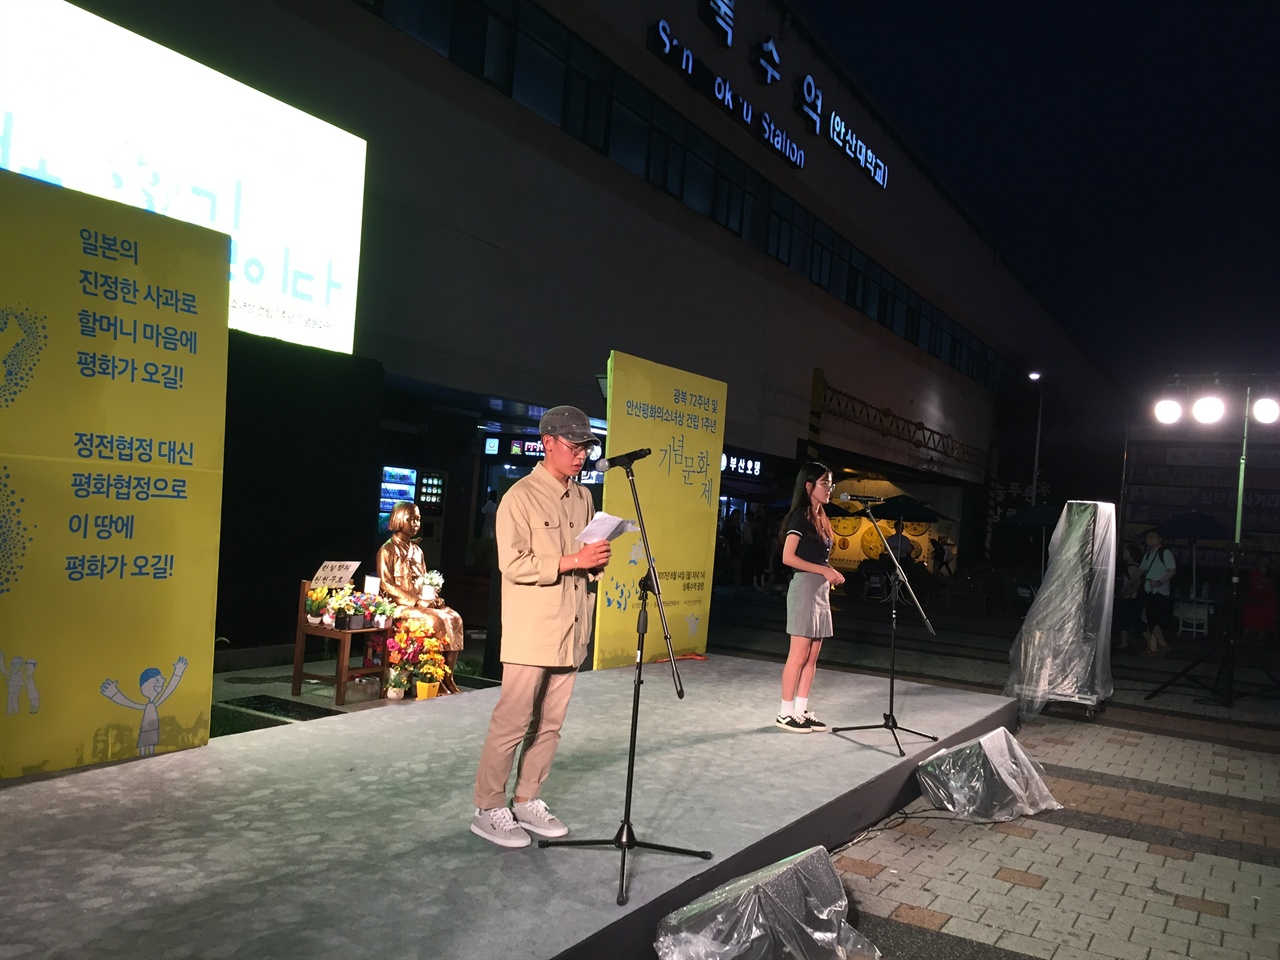 경기도 안산, 광복 72주년 및 안산 평화의 소녀상 건립 1주년 기념문화제에 참여한 청소년들이 무대에서 발언을 하고 있다.
